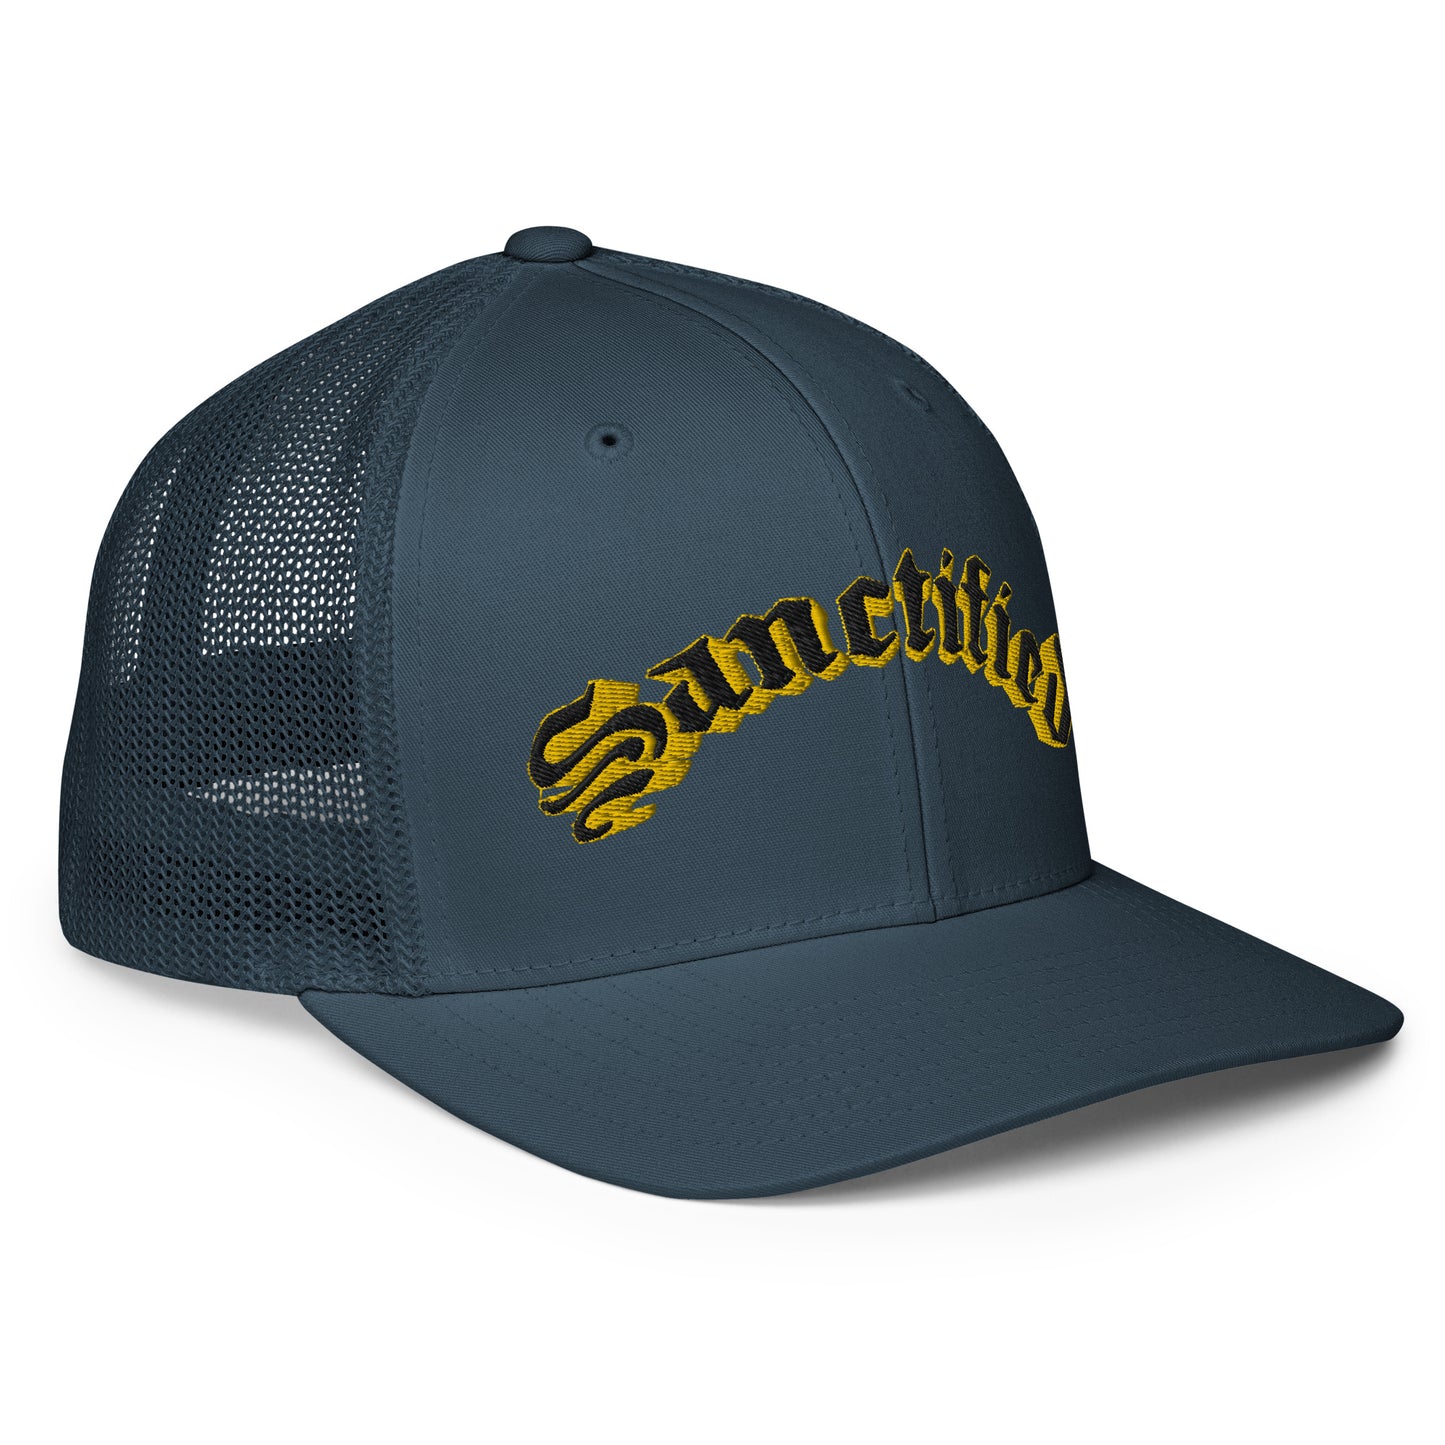 Sanctified Signature- Closed-back trucker cap